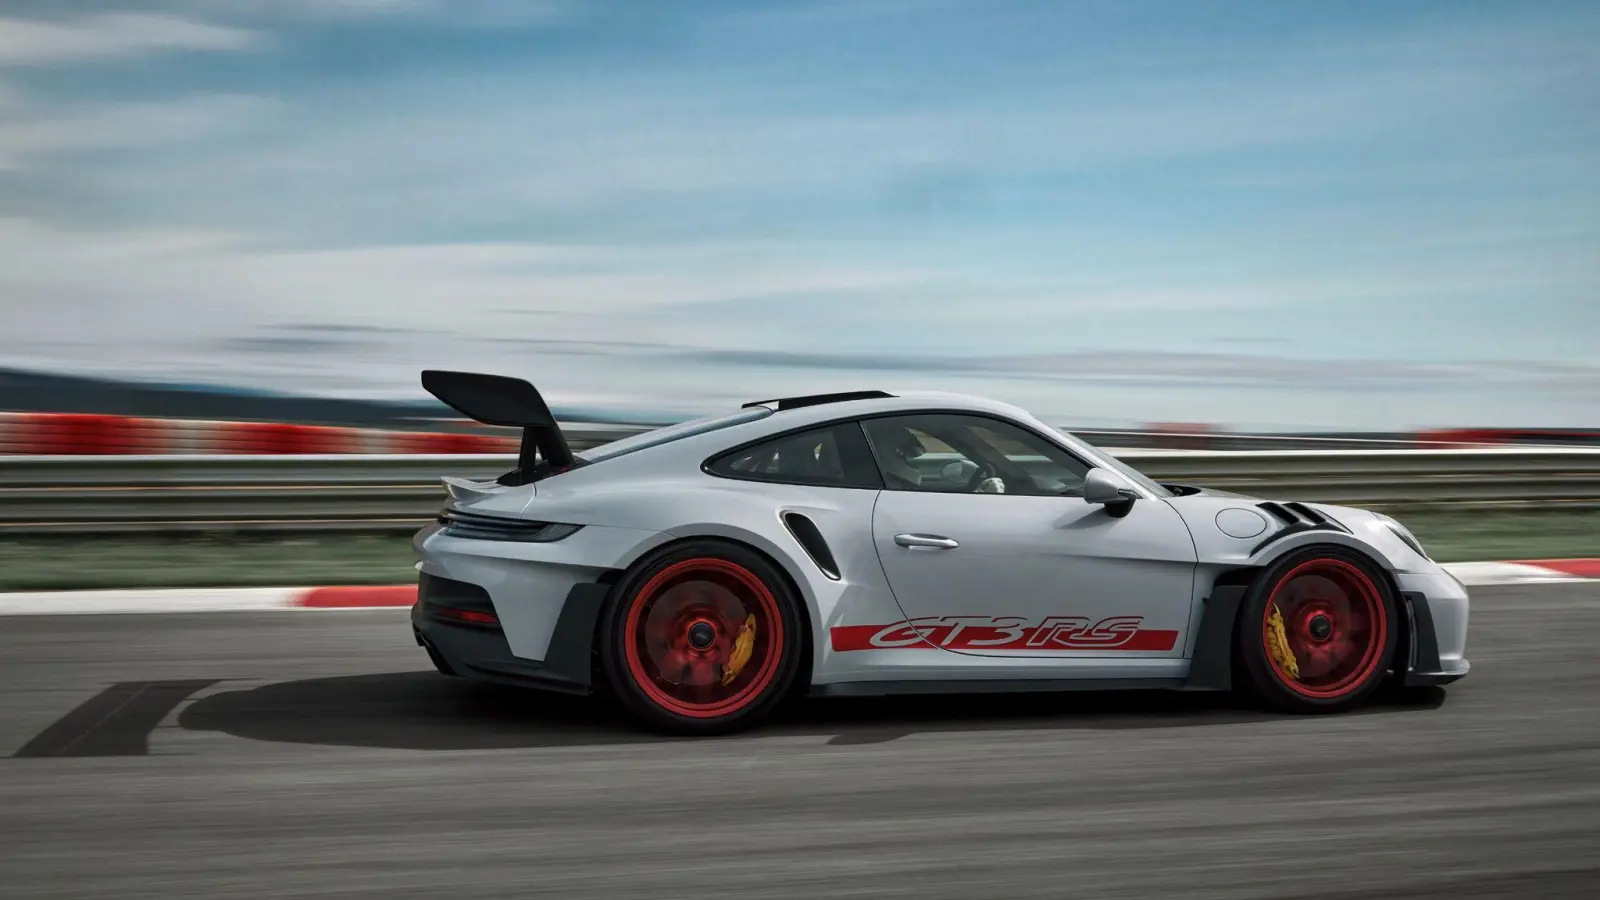 Für die Rennstrecke gemacht: Der neue Porsche 911 GT3 RS erreicht durch aktive Elemente an der Front und den großen Heckflügel einen dreimal größeren Anpressdruck als das GT3-Grundmodell. (Foto: Porsche AG/dpa-tmn)